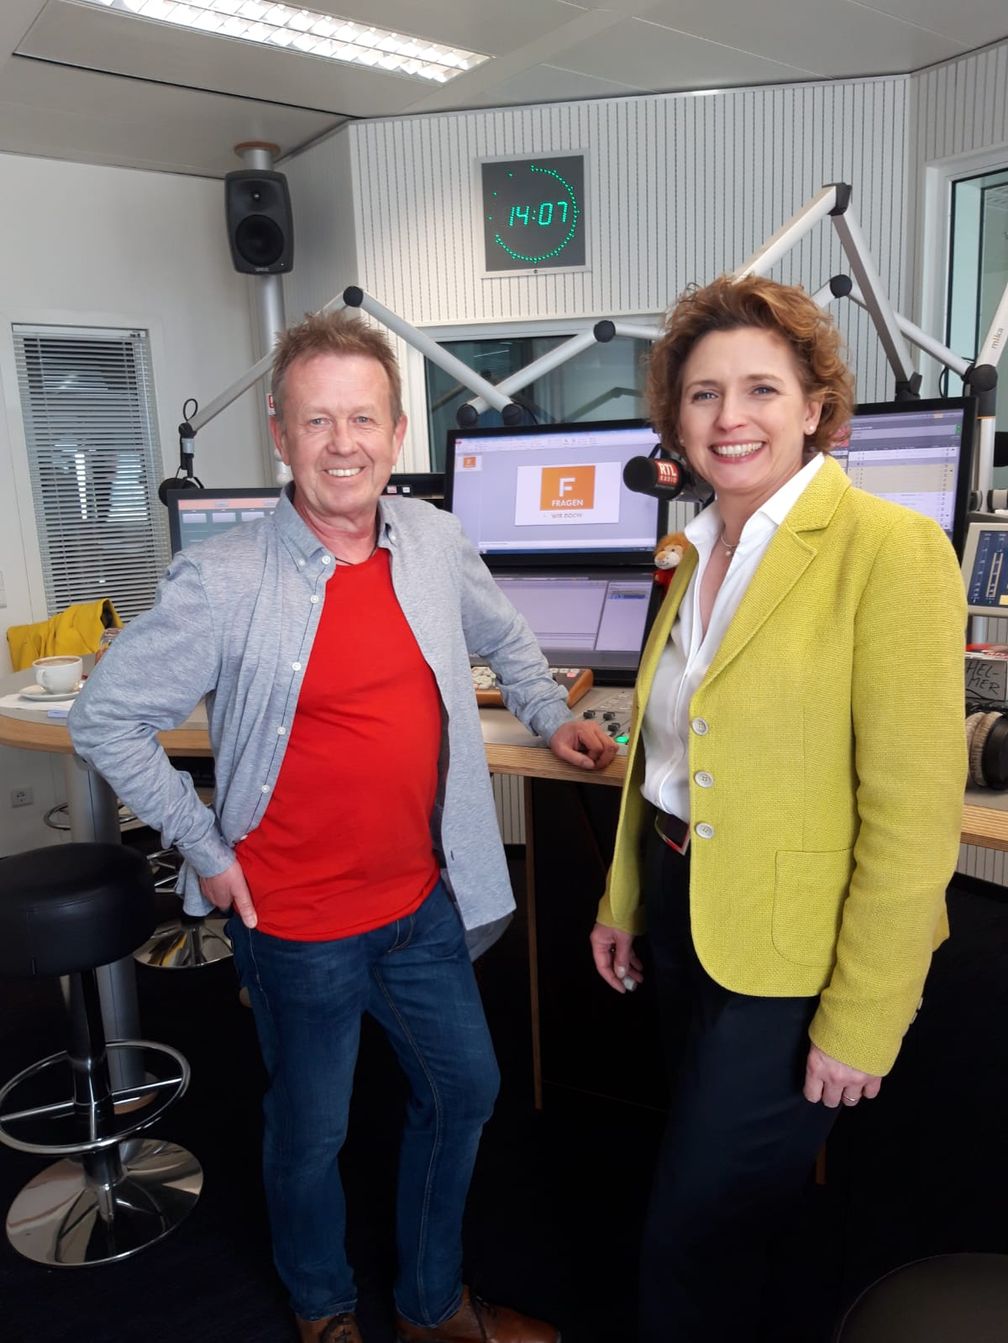 "FRAGEN WIR DOCH!"-Moderator Helmer Litzke mit FDP-Politikerin Nicola Beer im RTL Radio-Studio in Berlin. Bild: "obs/MAASS-GENAU - Das Medienbüro/Helmer Litzke, RTL Radio"